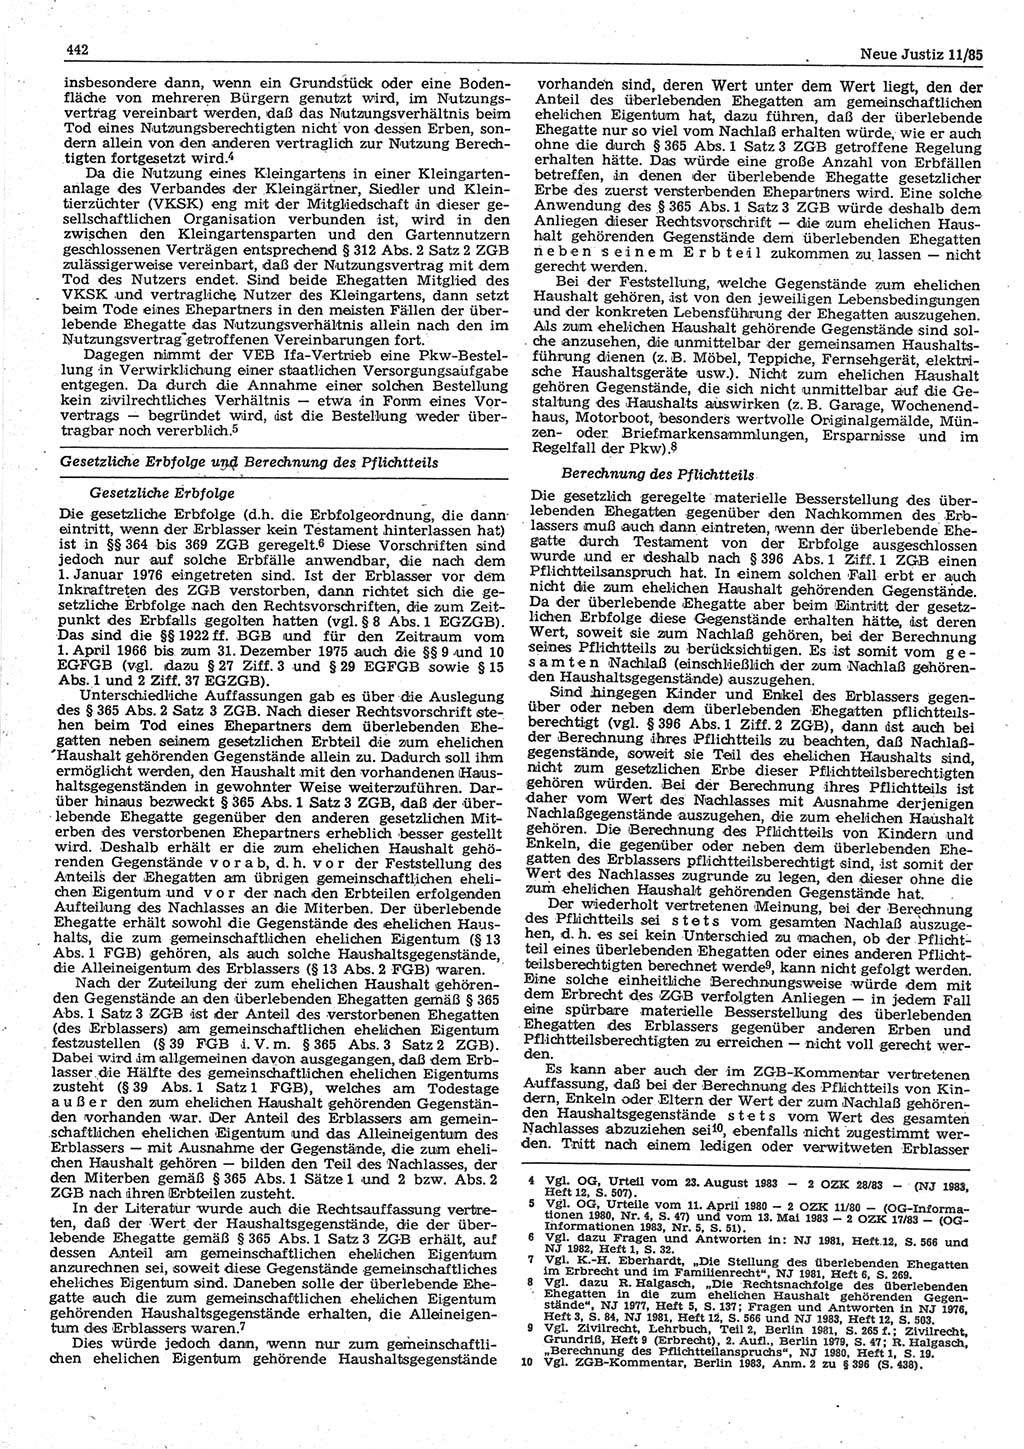 Neue Justiz (NJ), Zeitschrift für sozialistisches Recht und Gesetzlichkeit [Deutsche Demokratische Republik (DDR)], 39. Jahrgang 1985, Seite 442 (NJ DDR 1985, S. 442)